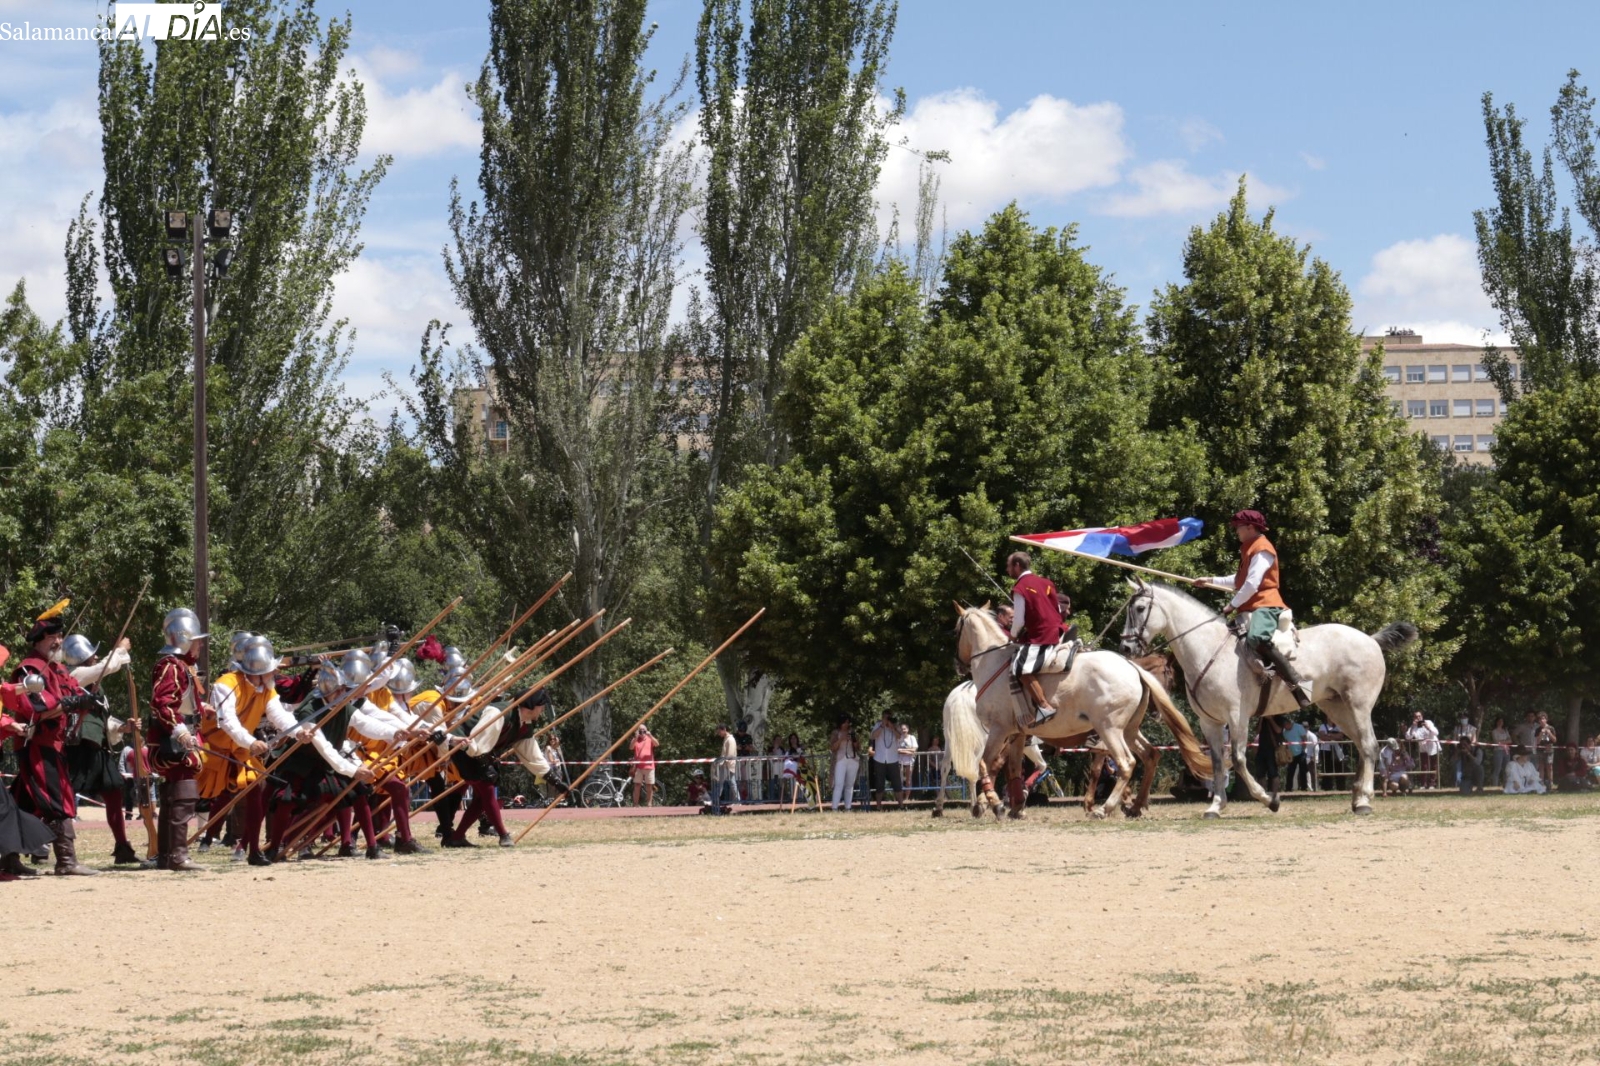 Recreación histórica de una batalla de los Tercios de Flandes en el Festival del Siglo de Oro en Salamanca - David Sañudo